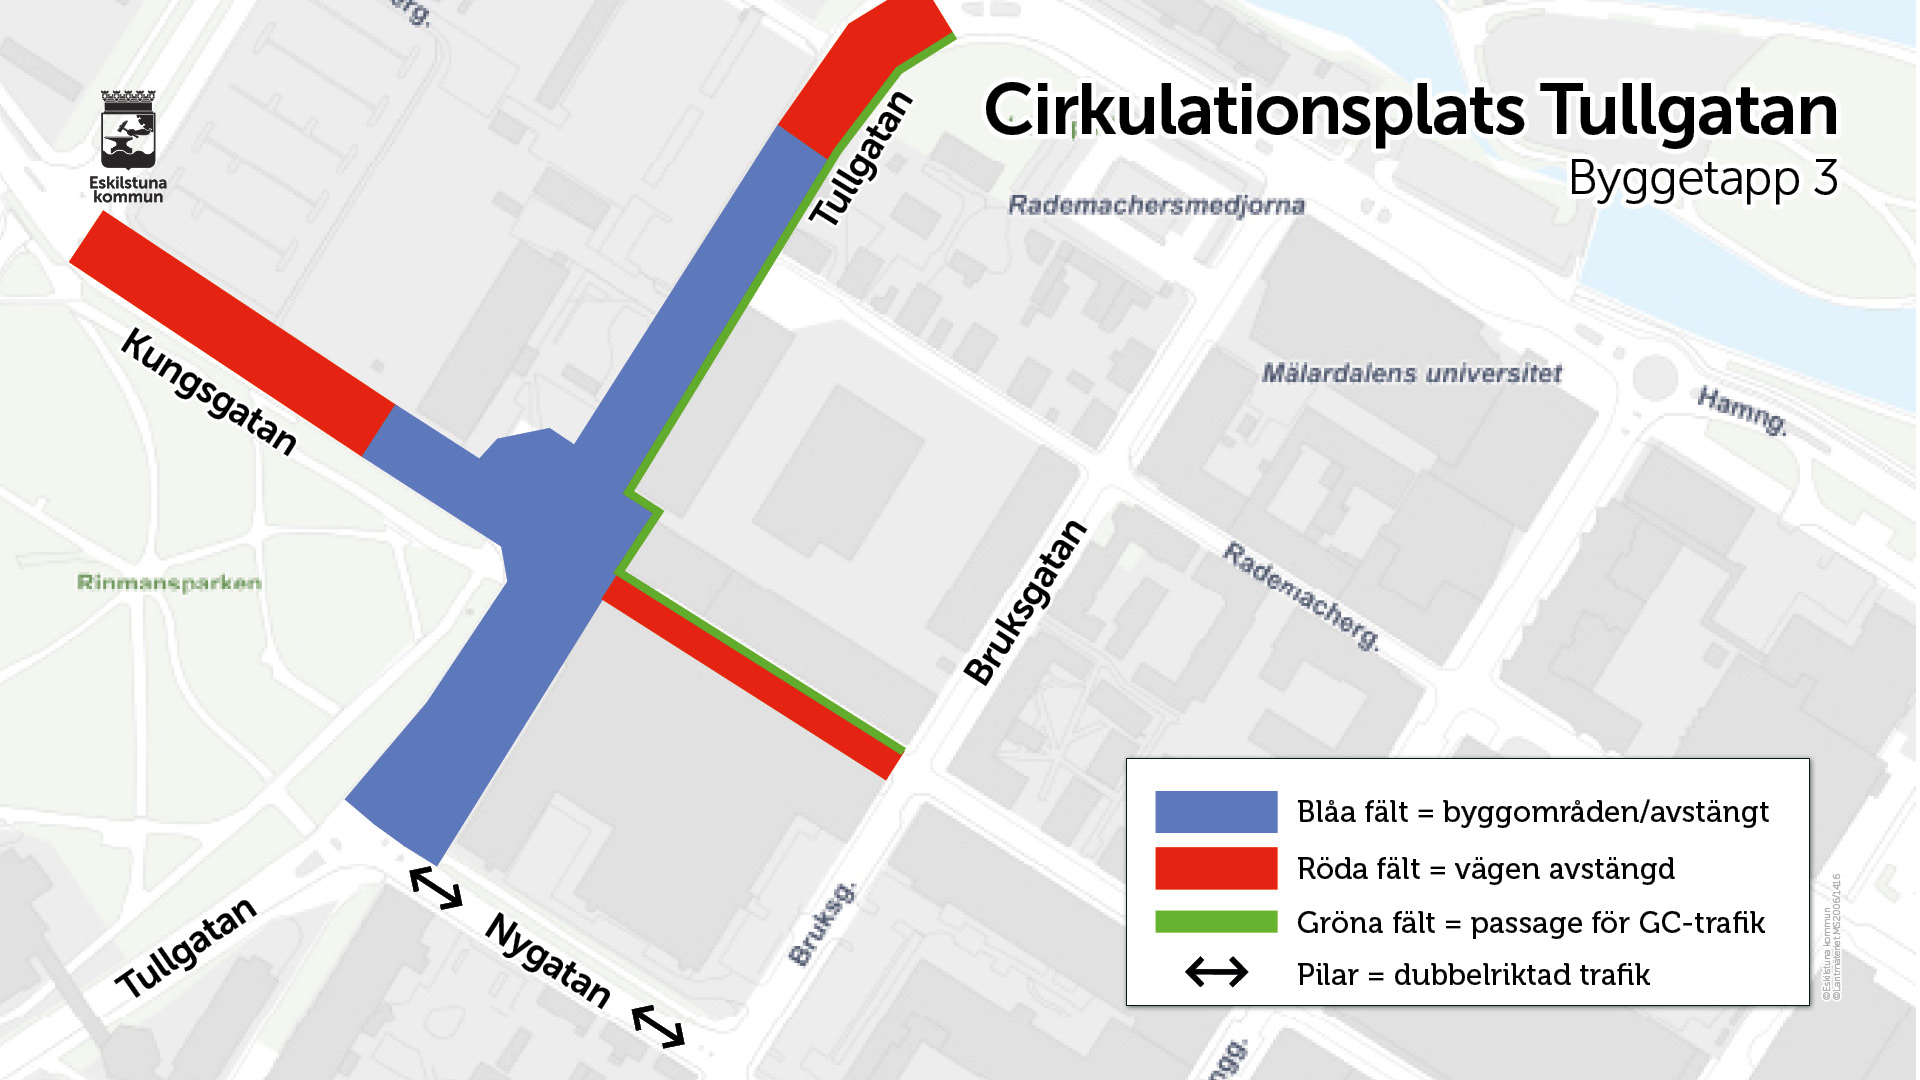 Kartbild som visar väg avstängd i röda fält, byggområden i blått och passage för gång- och cykeltrafik i grönt